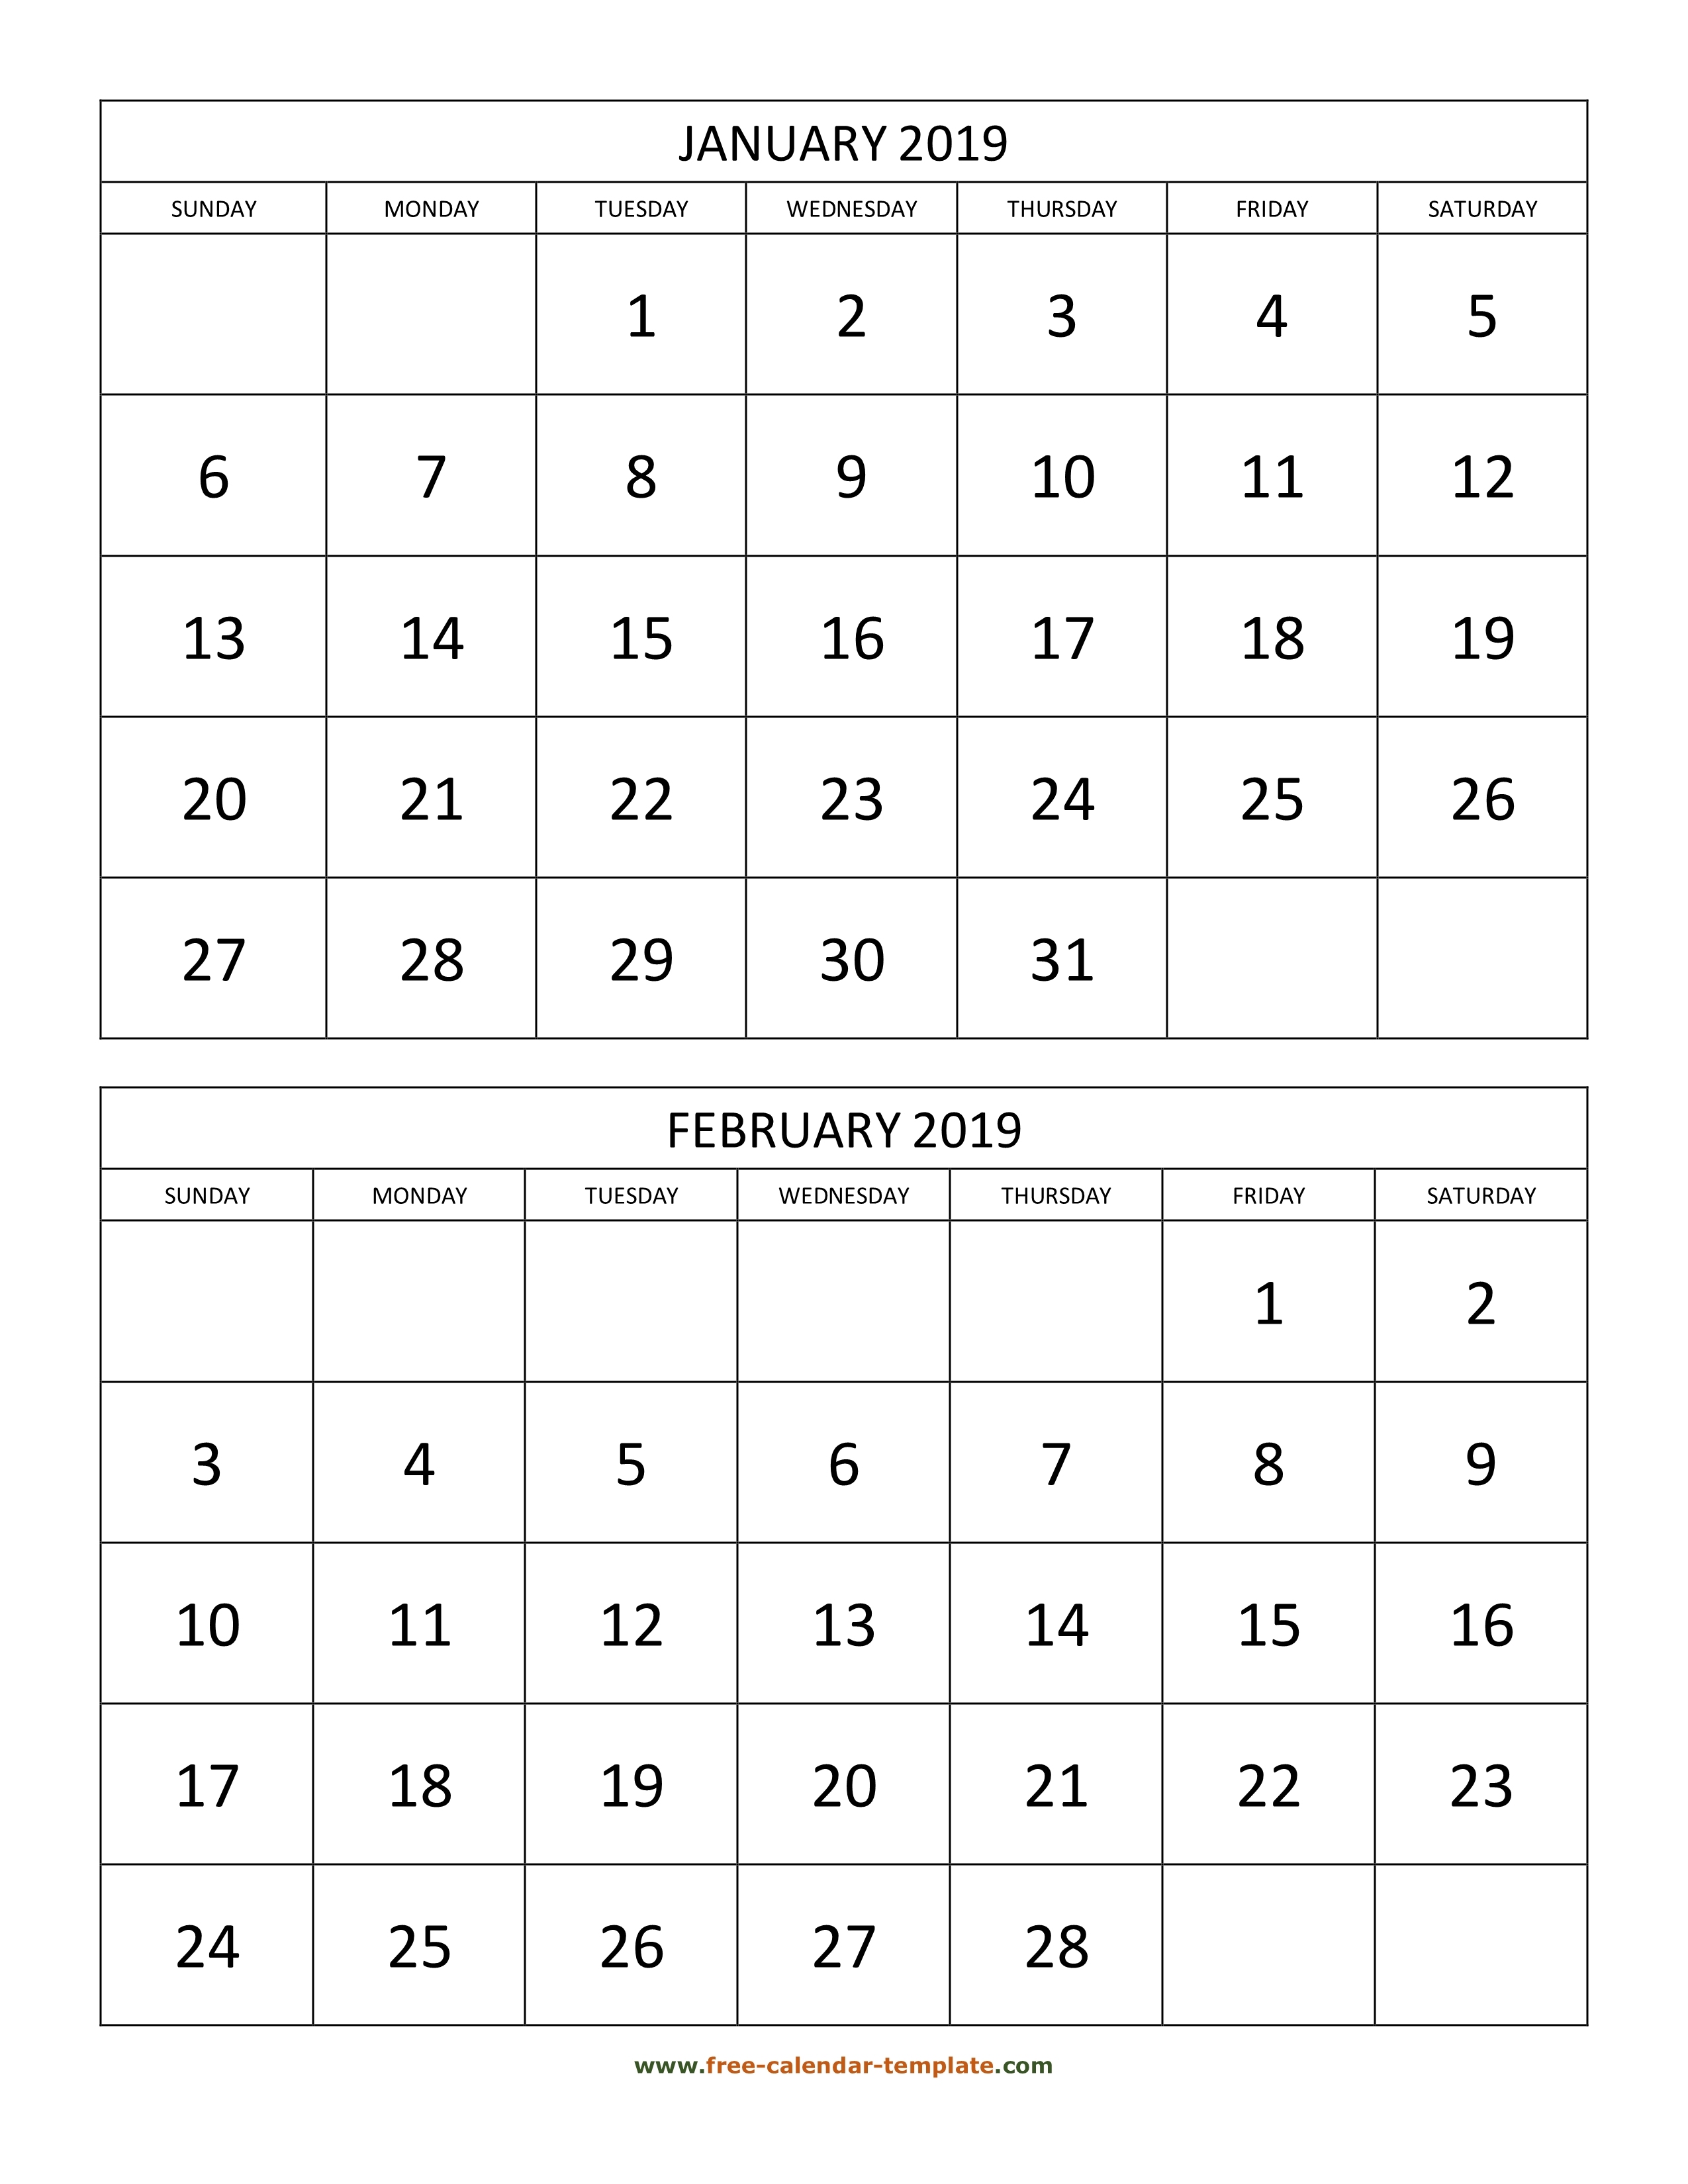 calendar-2022-3-months-per-page-january-2022-calendar